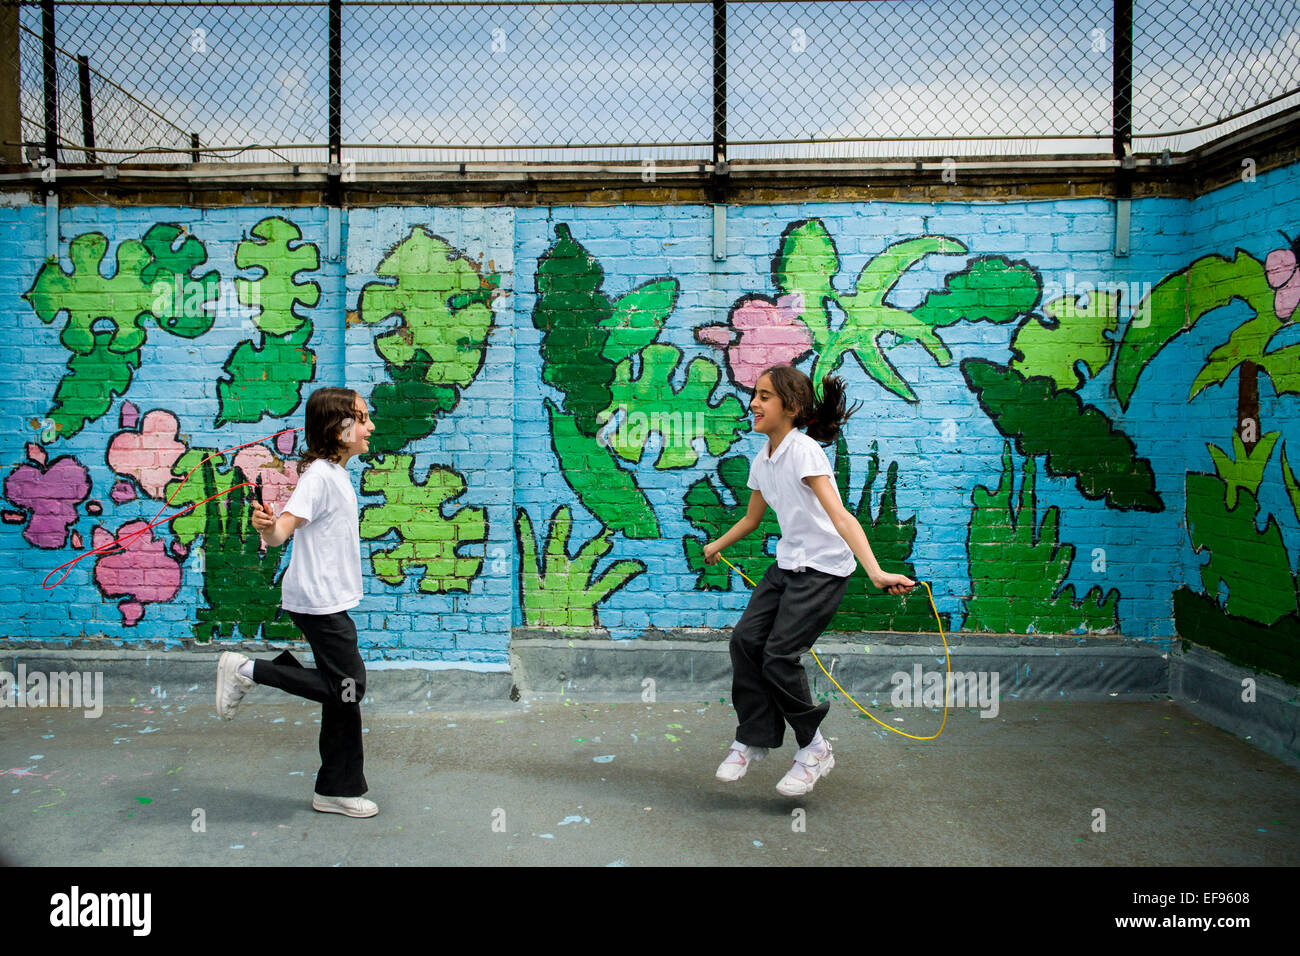 2 girls skipping in graffiti school playground Stock Photo